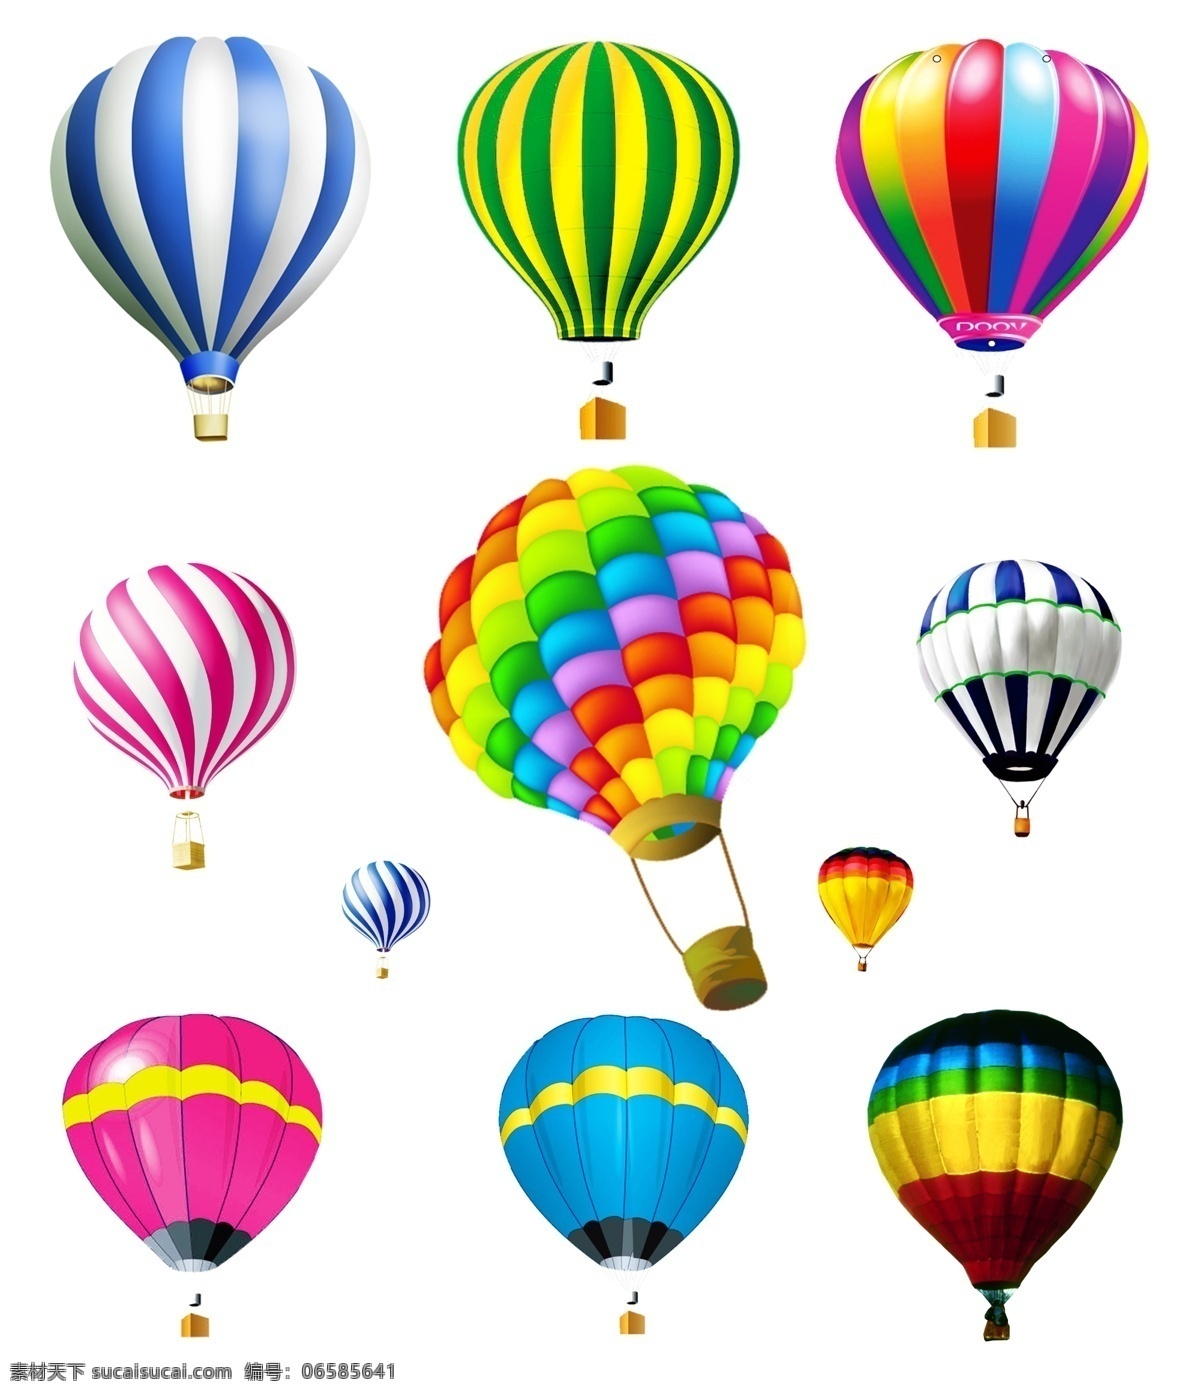 热气球 热气球模板 热气球素材 气球 各种热气球 彩色热气球